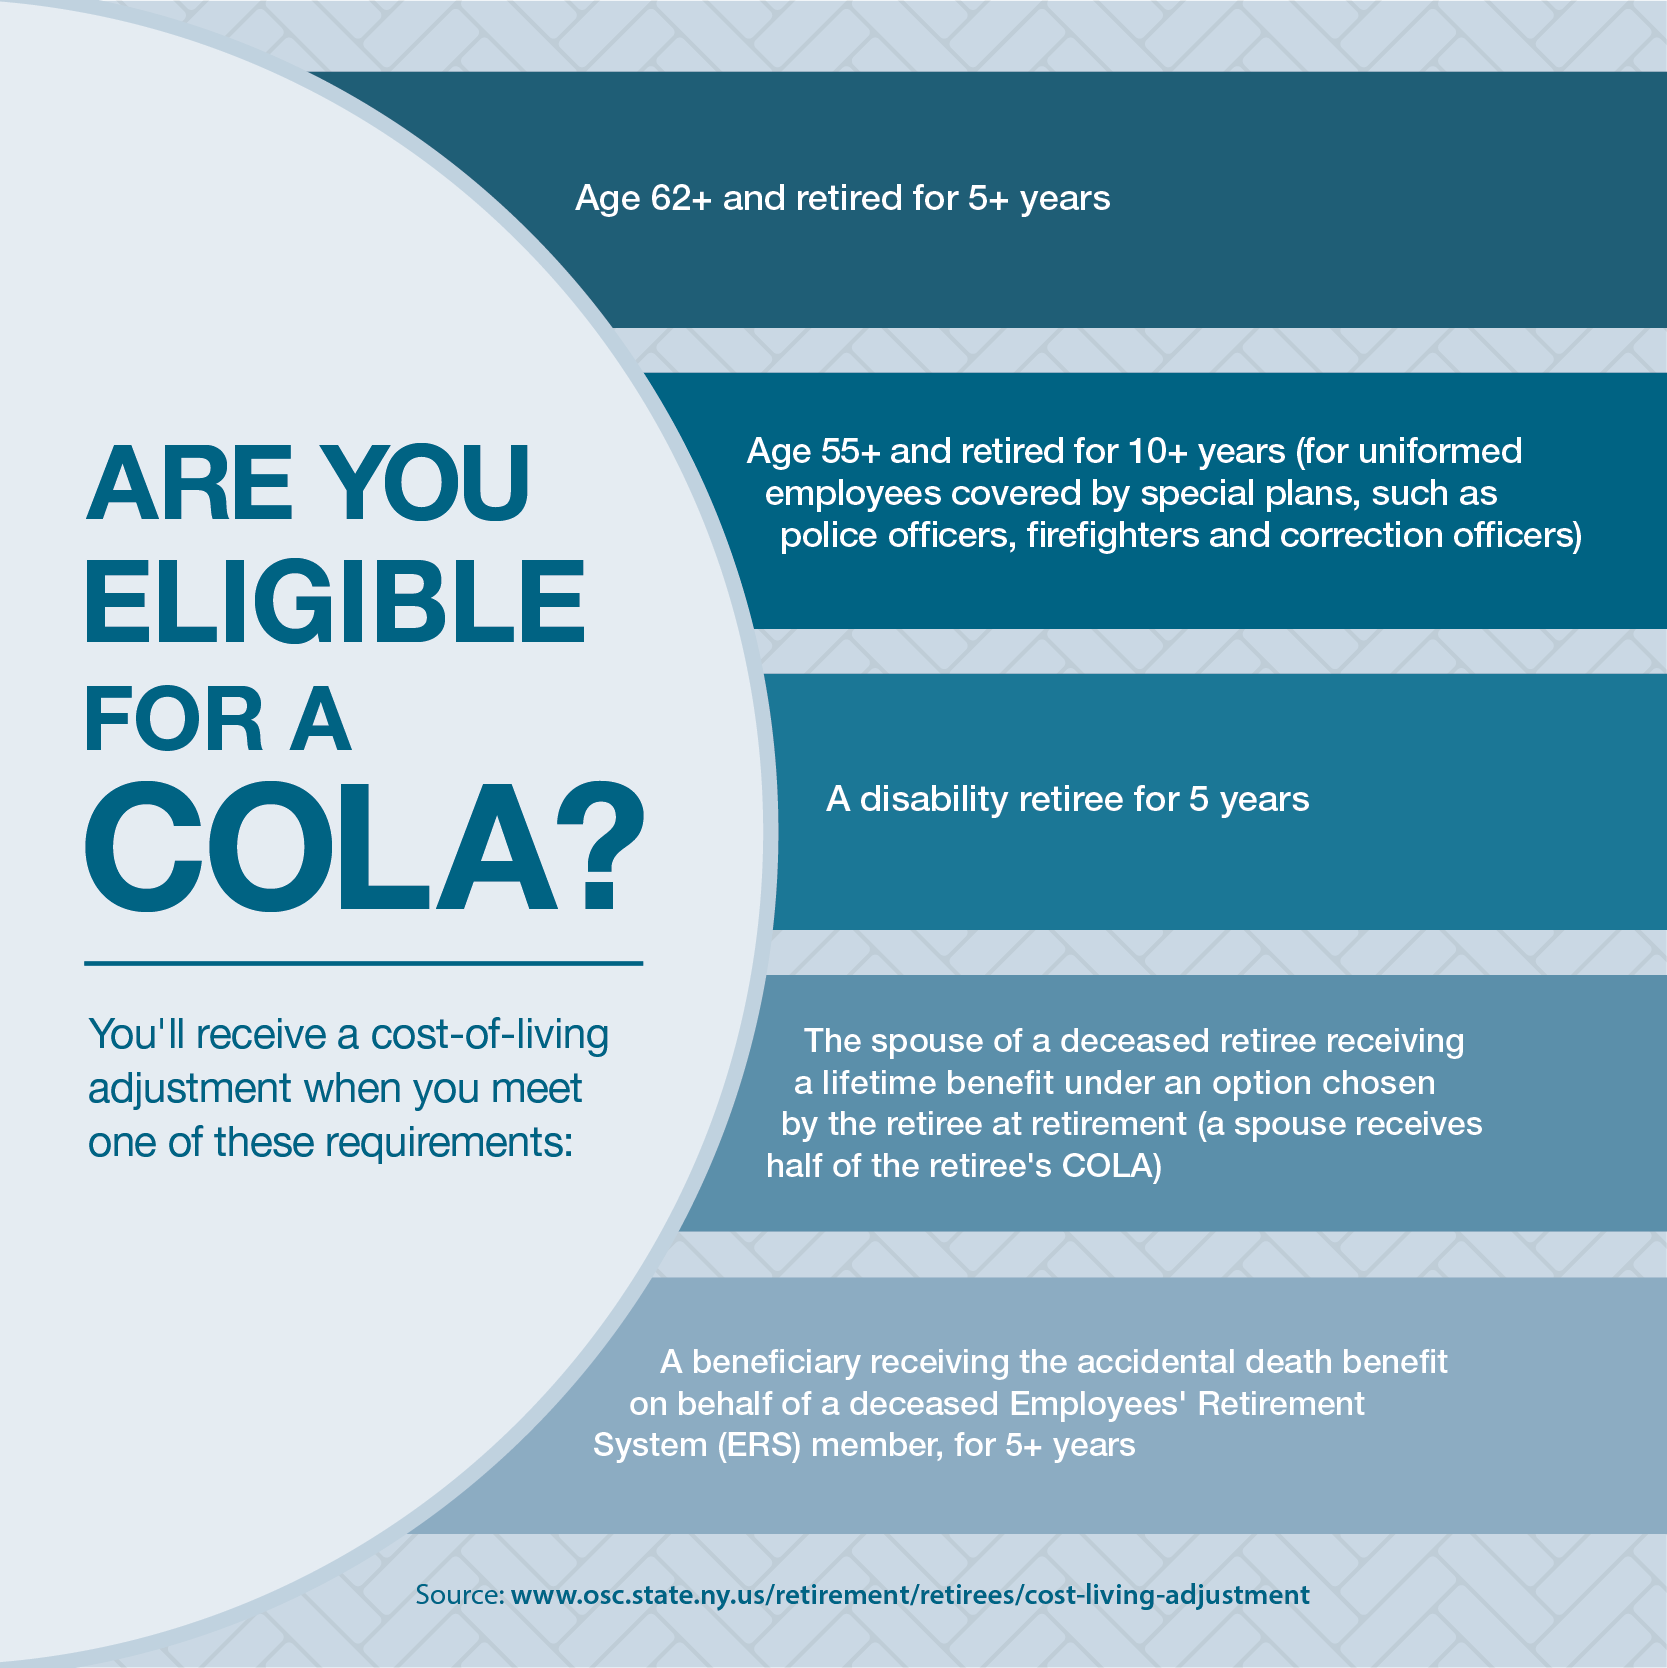 COLA eligibility